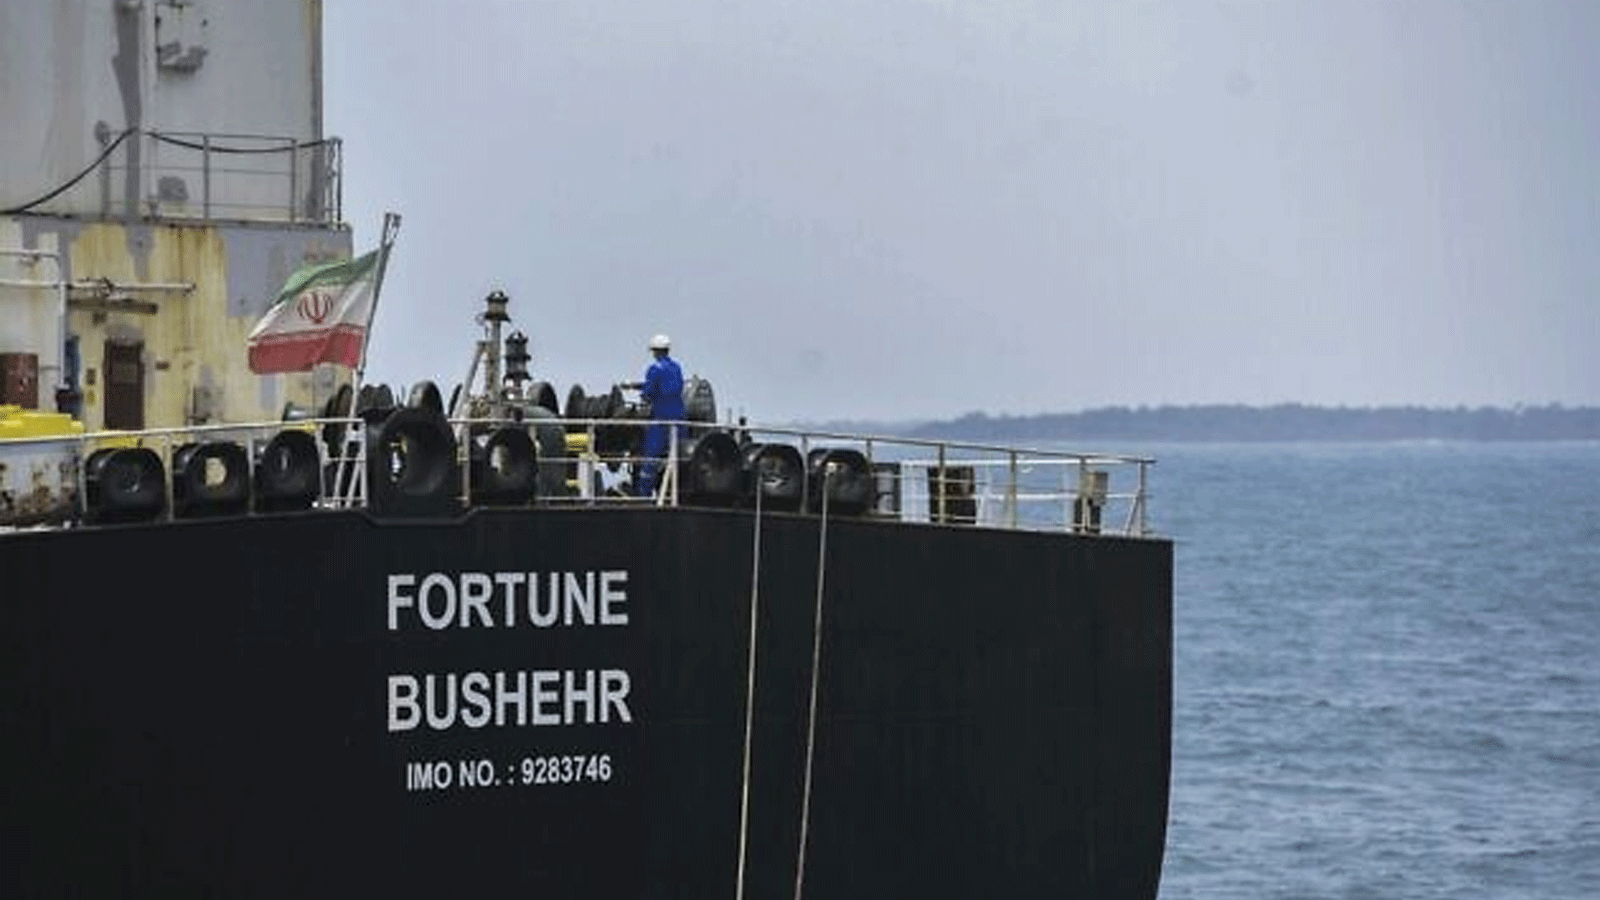 صورة أرشيفية لناقلة النفط Fortune التي ترفع العلم الإيراني ترسو في مصفاة El Palito بعد وصولها إلى Puerto Cabello في ولاية Carabobo الشمالية، فنزويلا. 25 أيار\مايو 2020.